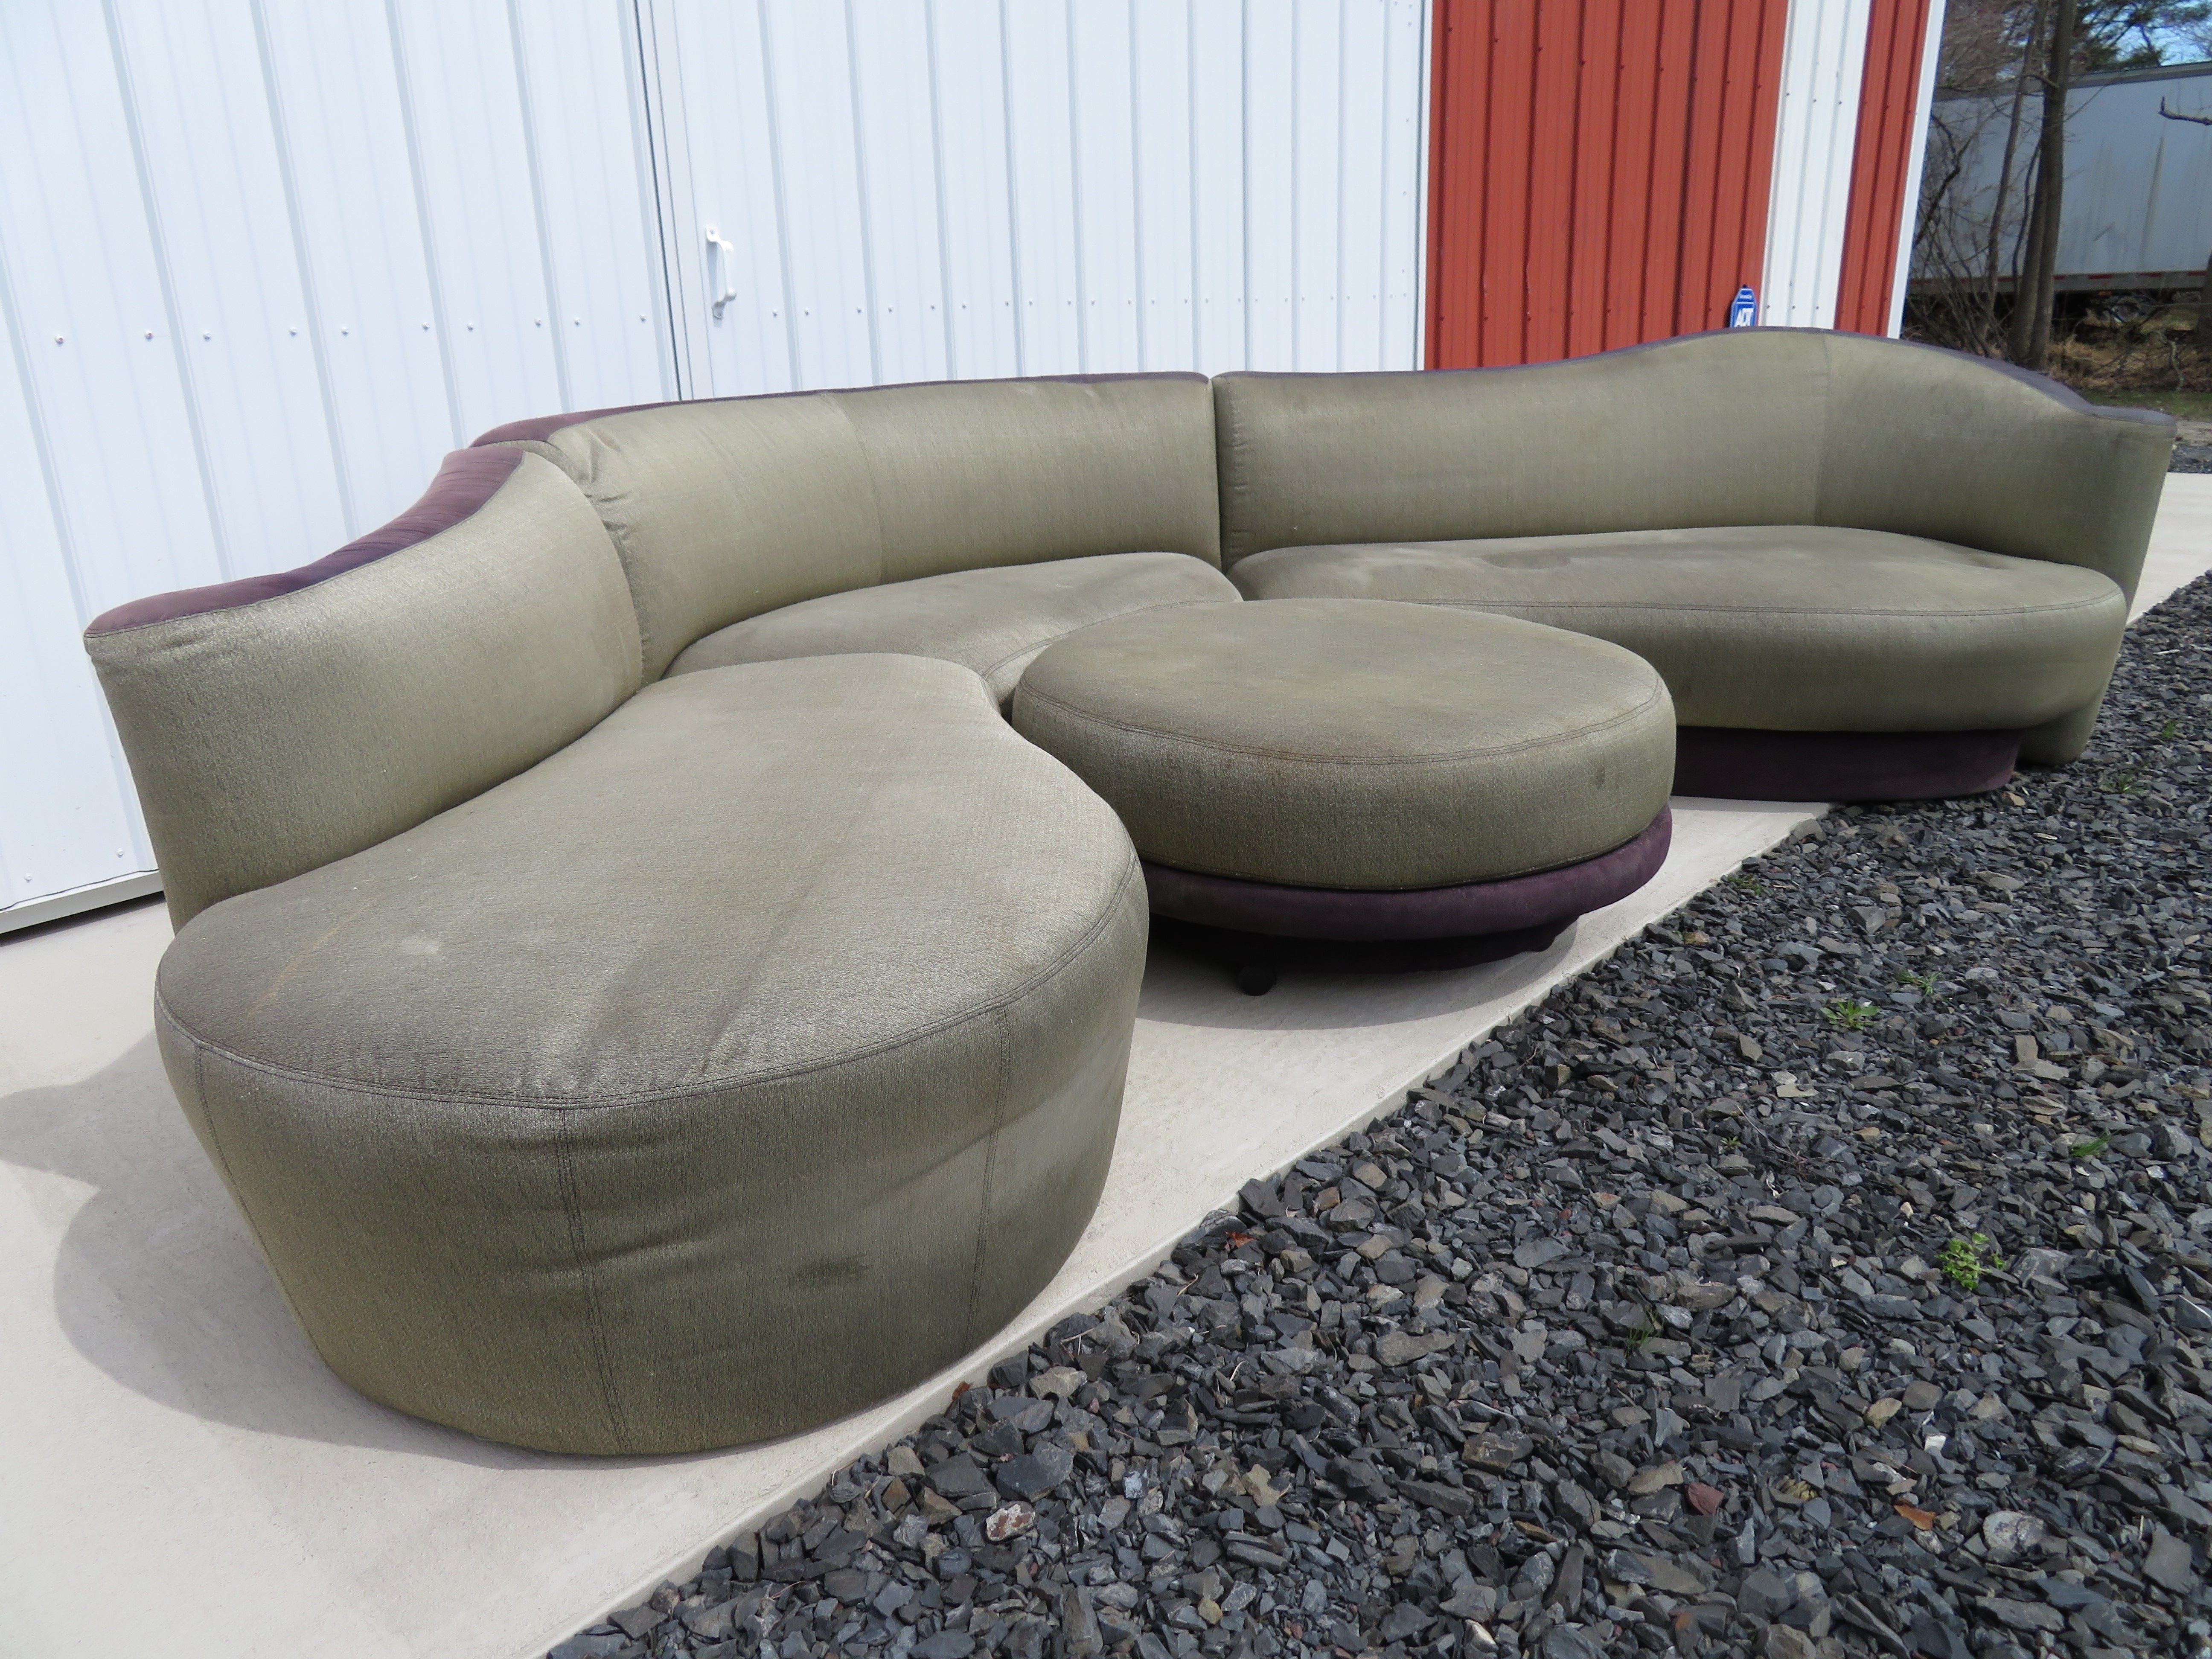 Wunderschönes 4-teiliges Serpentinen-Sofa, entworfen von Vladimir Kagan, hergestellt von Weiman. Wir lieben die geschwungenen Kurven und die runde Ottomane, die zu diesem Sektionssofa gehört. Diese Garnitur hat noch ihren Originalstoff und muss neu